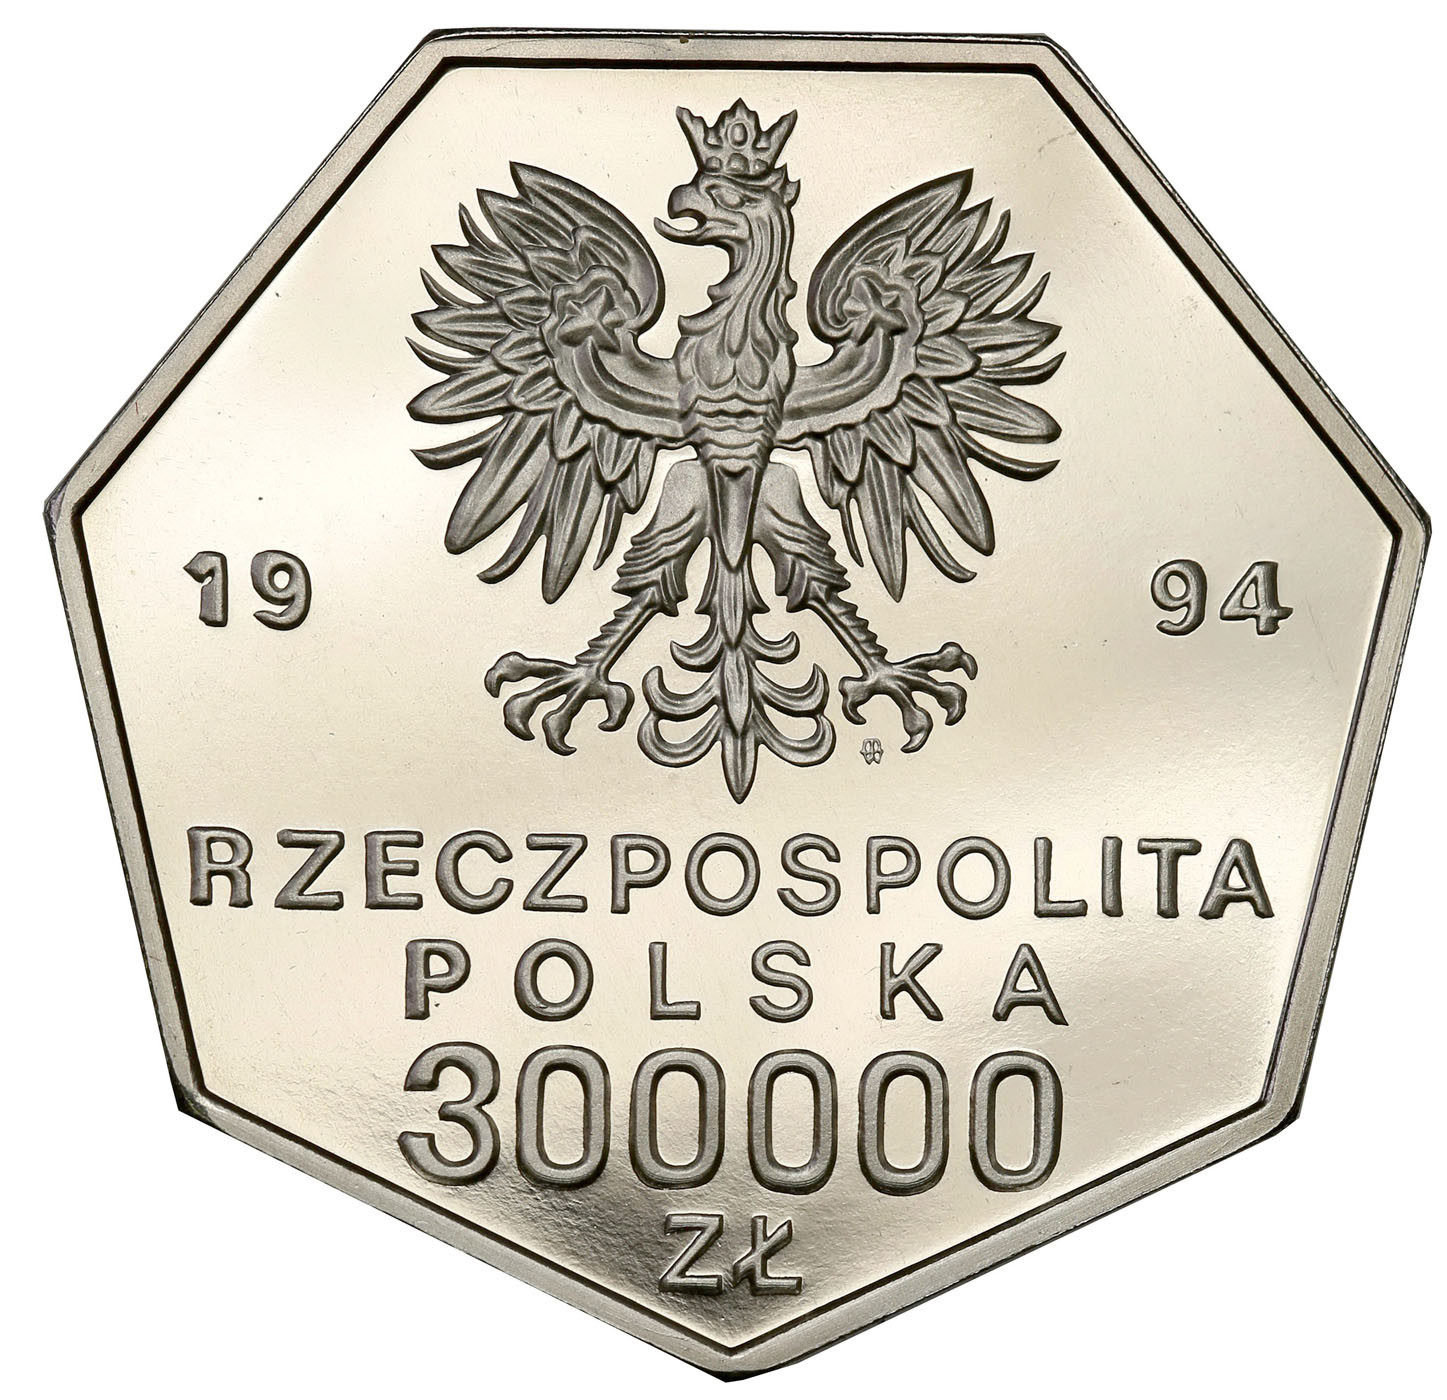 PRL. PRÓBA Nikiel 300 000 złotych 1994 – Odrodzenie Banku